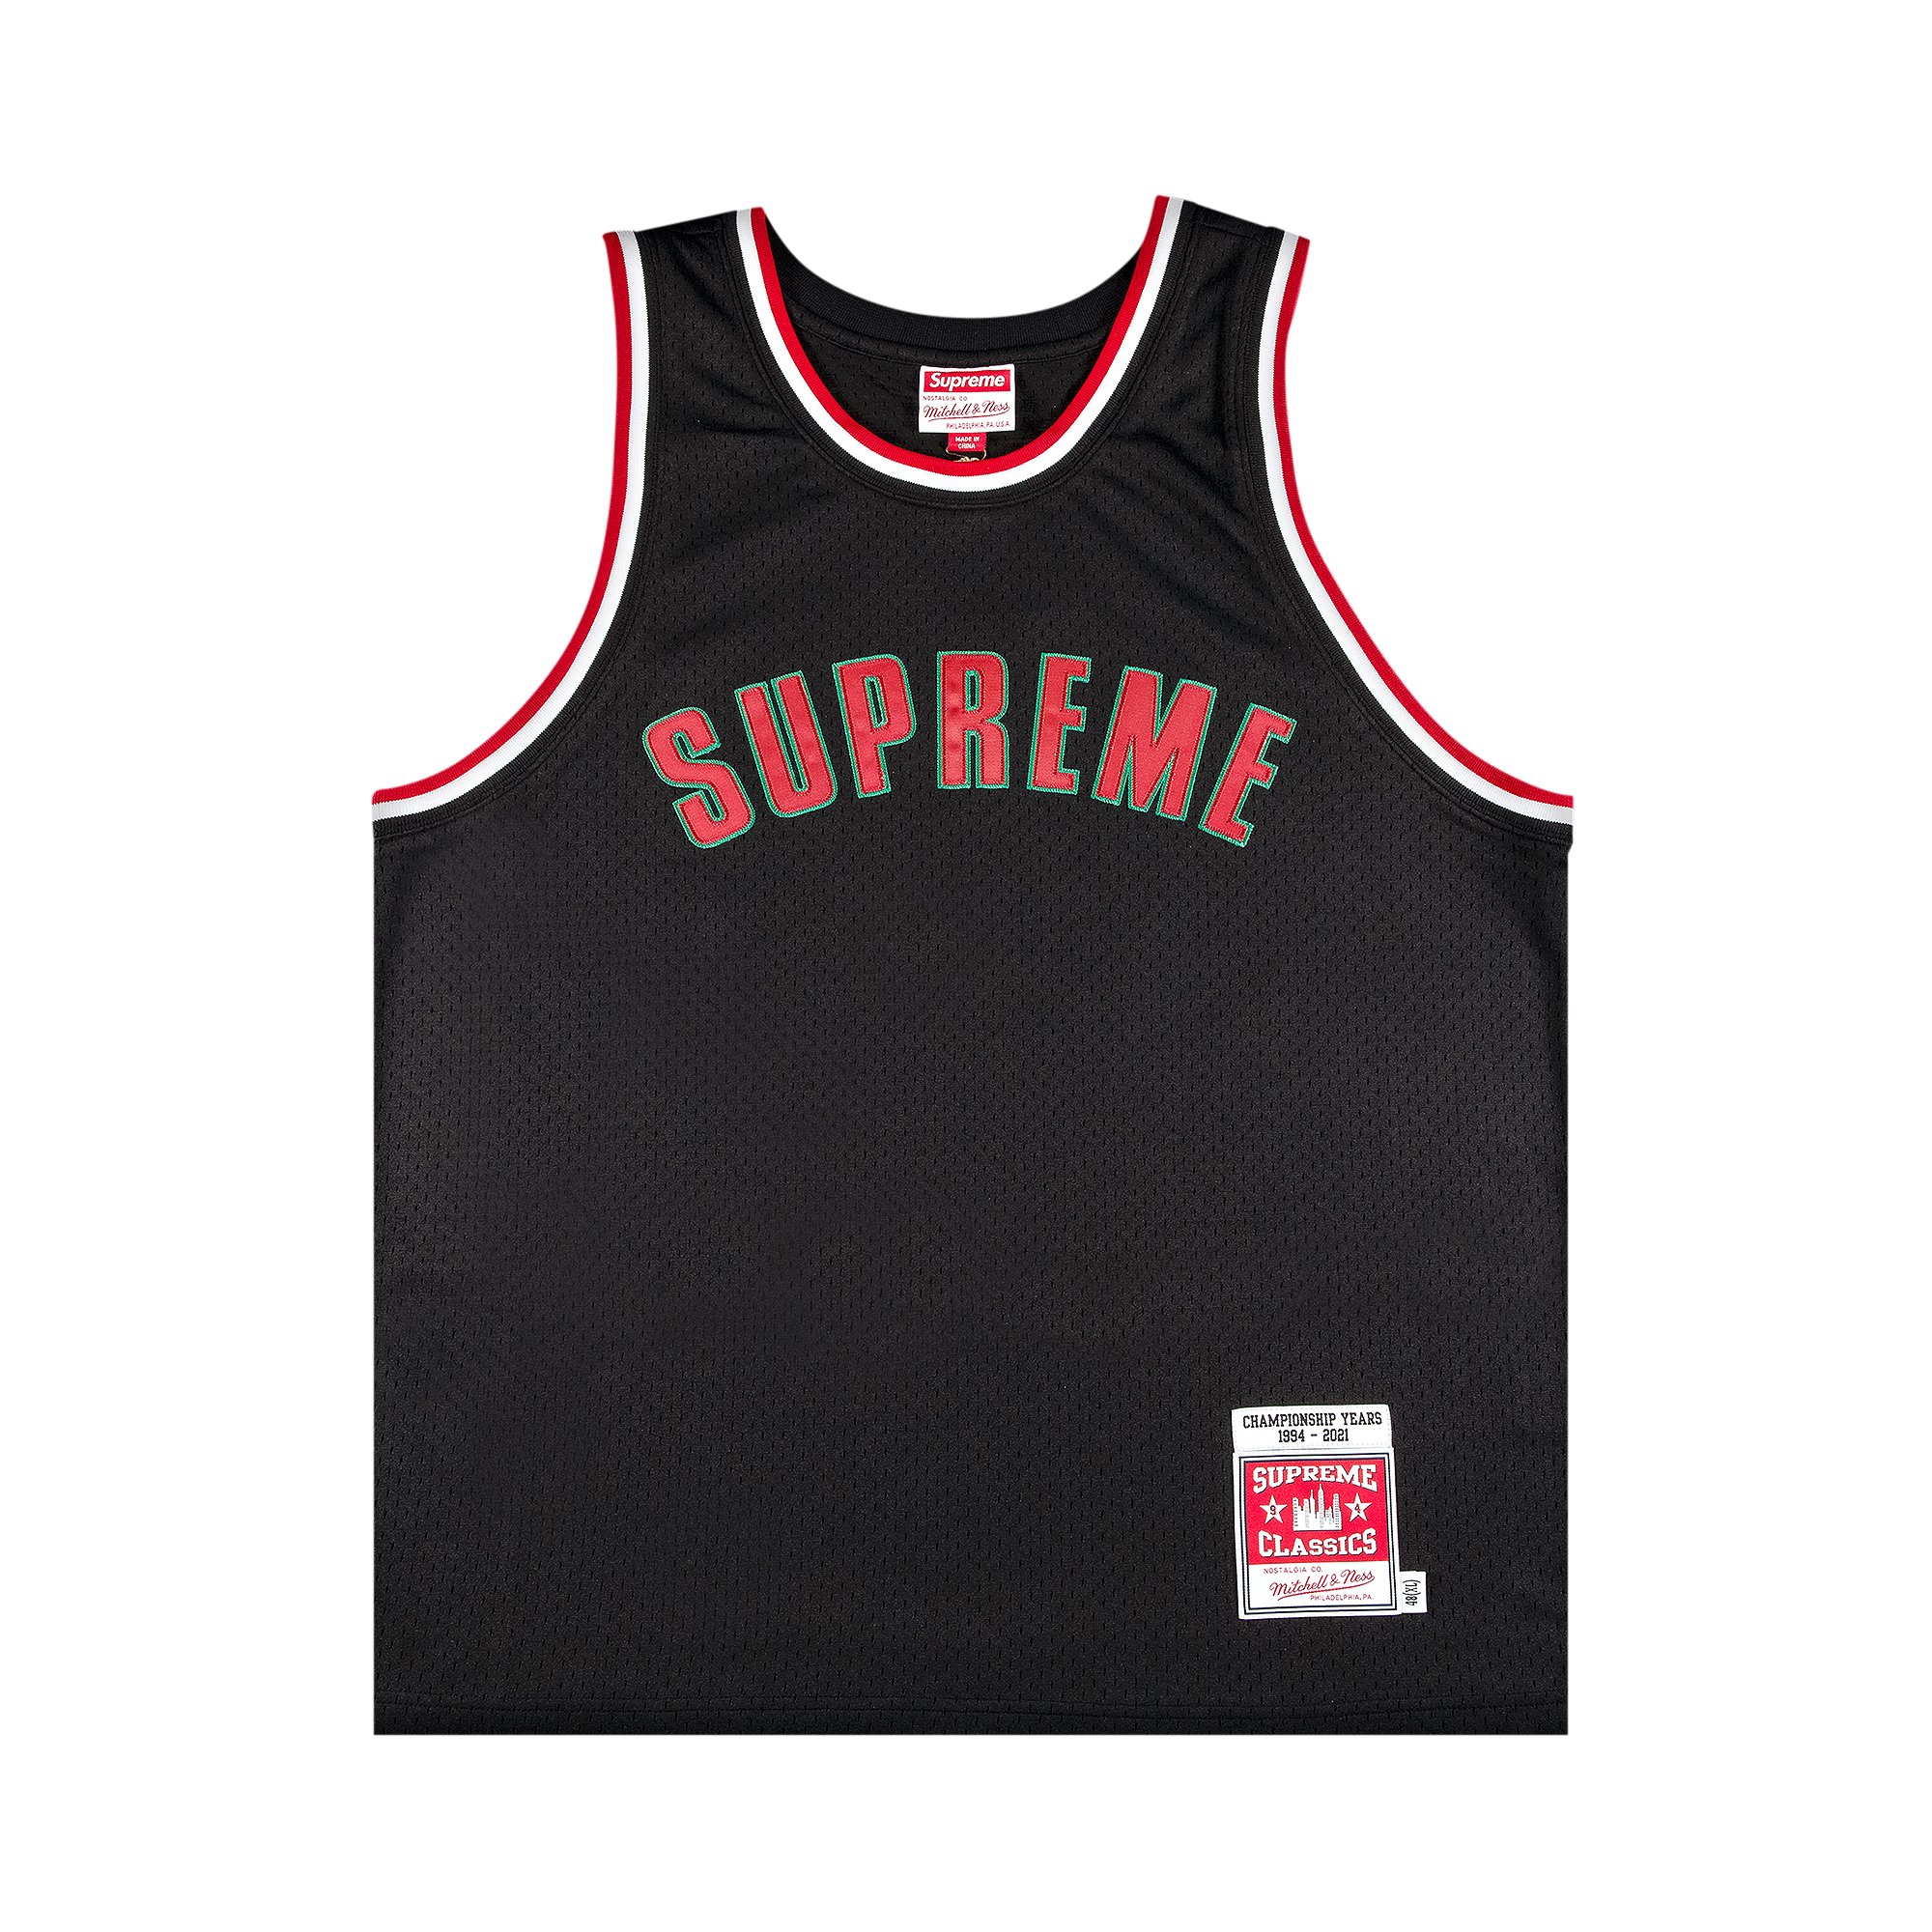 Supreme x Mitchell And Ness Basketball Jersey 'Black'